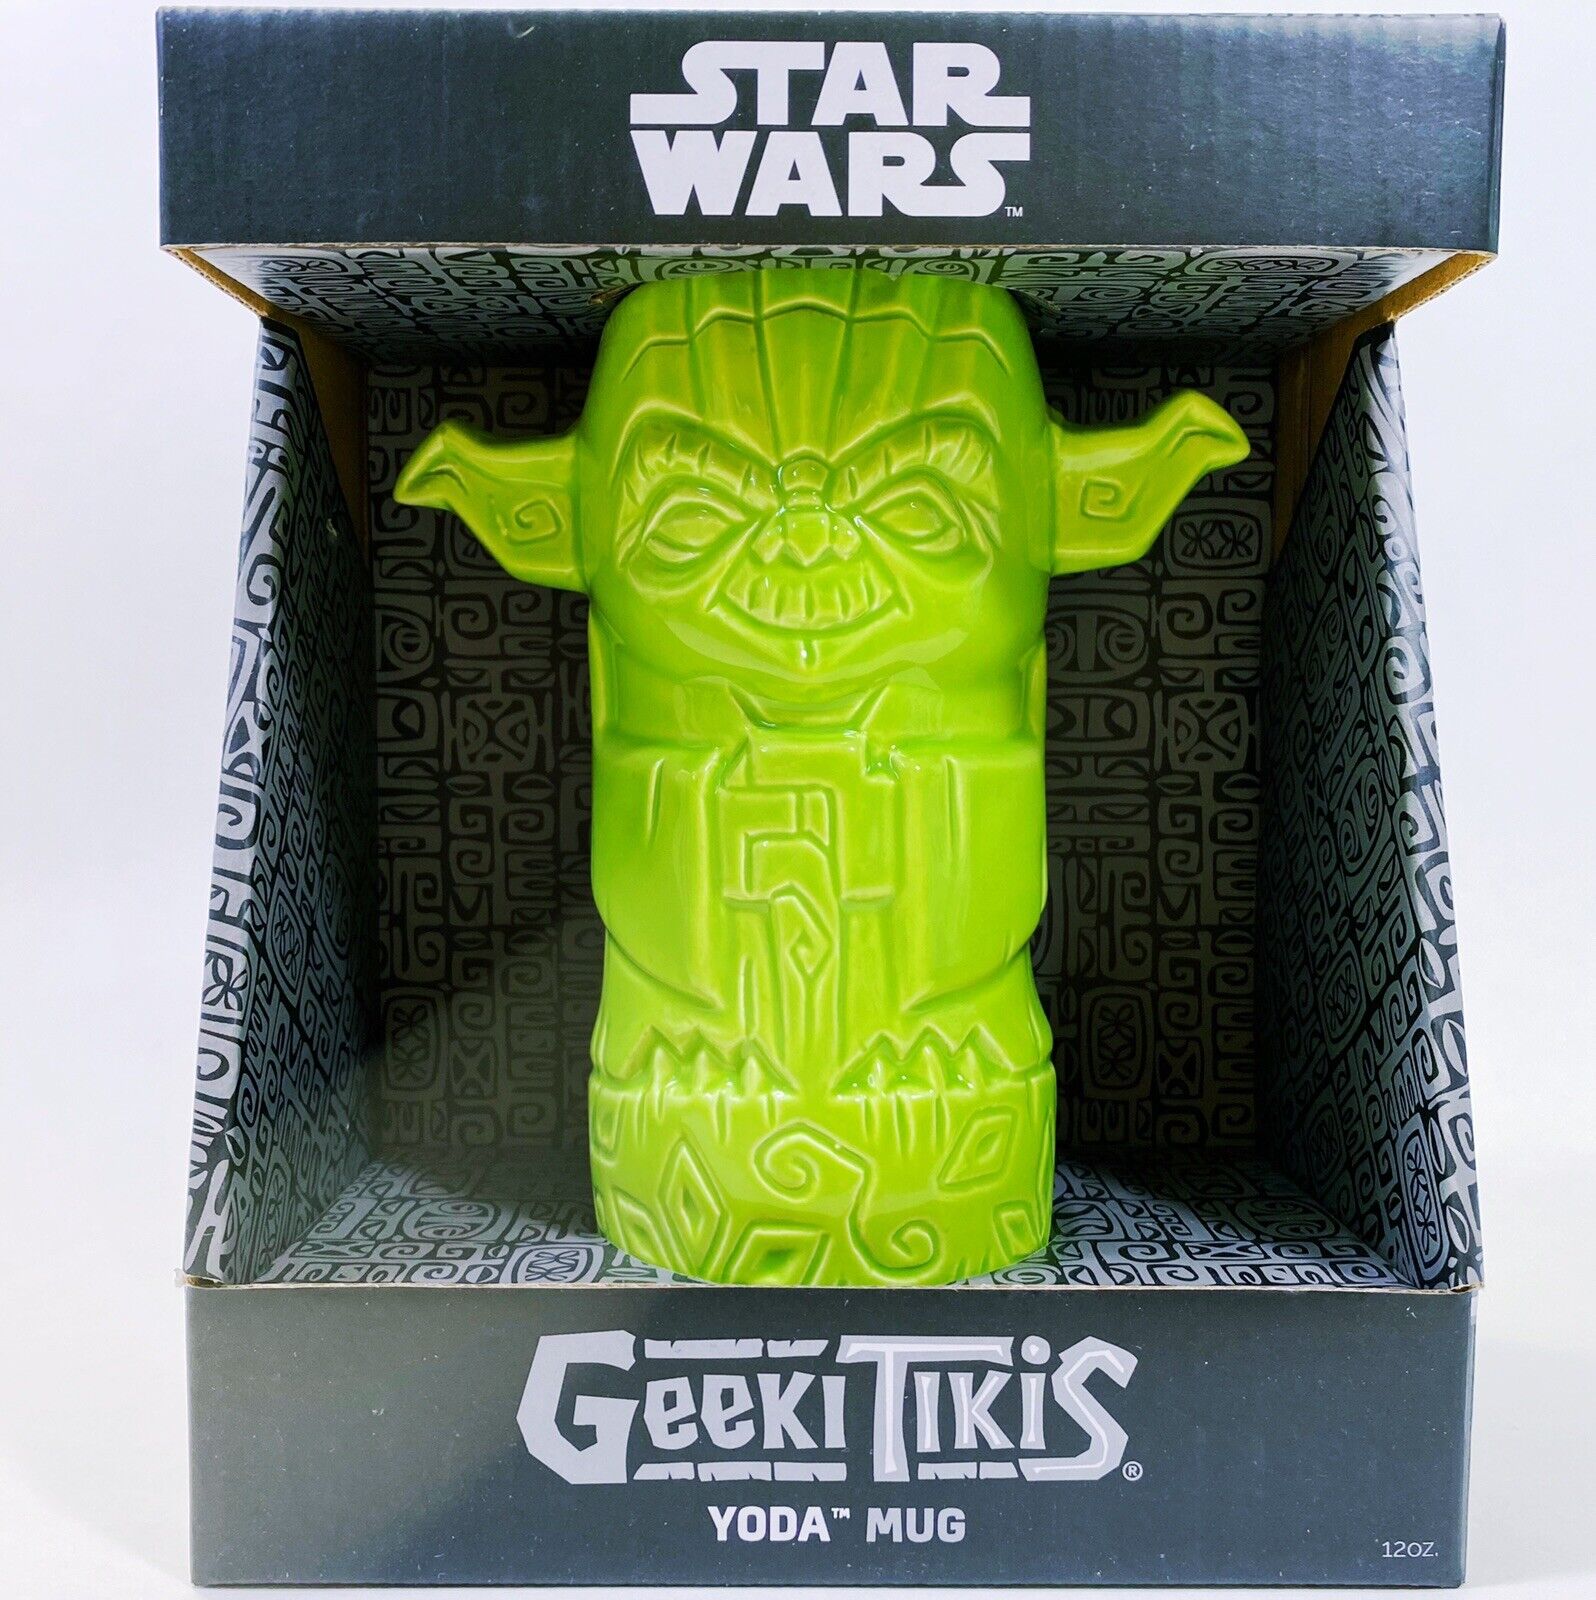 Disney Geeki Tikis Star Wars Mandalorian Yoda Ceramic Tiki Mug Cup Green Gift